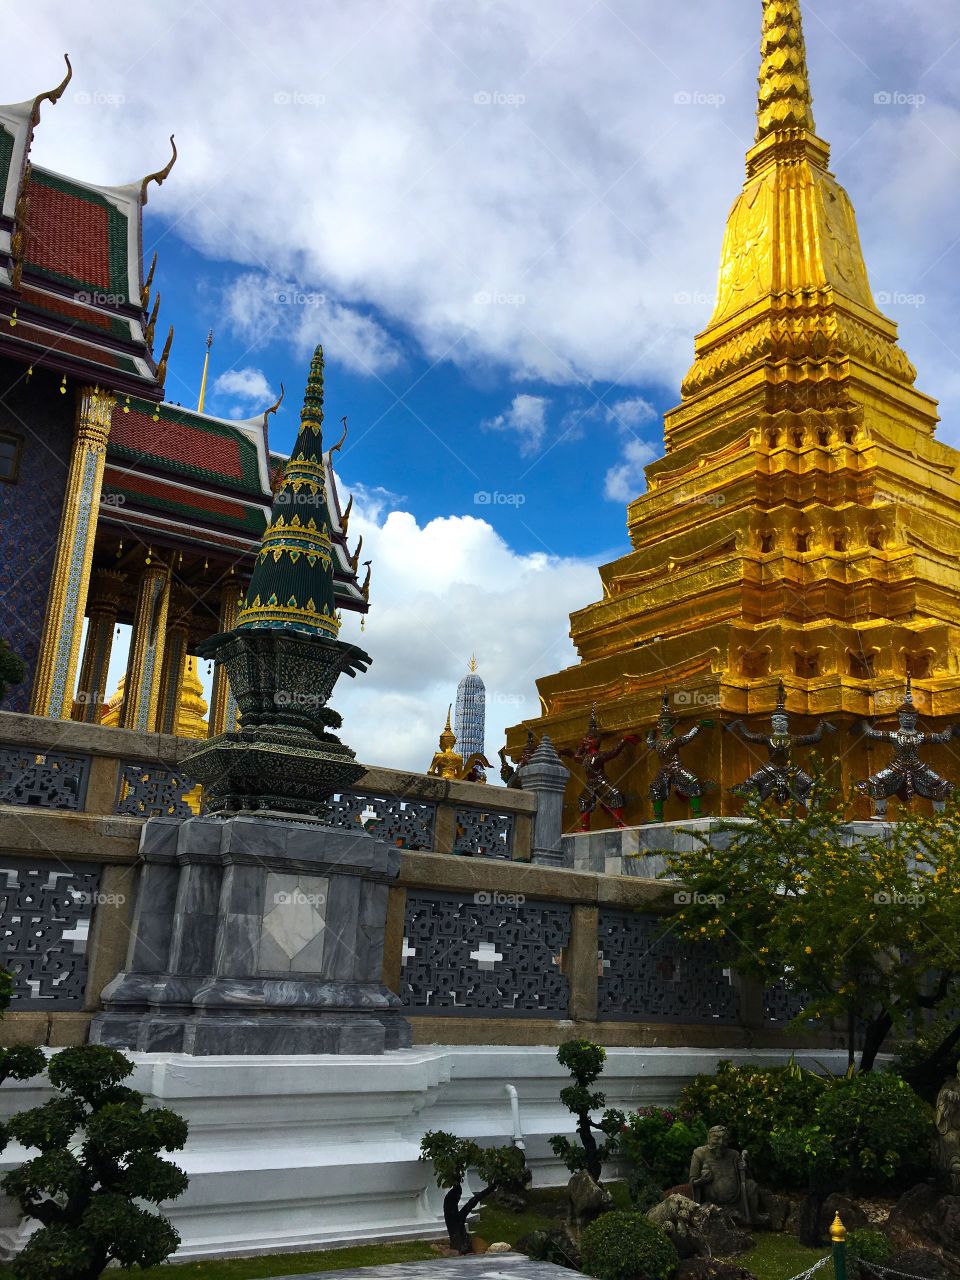 Grand Palace / Bangkok Thailand 22